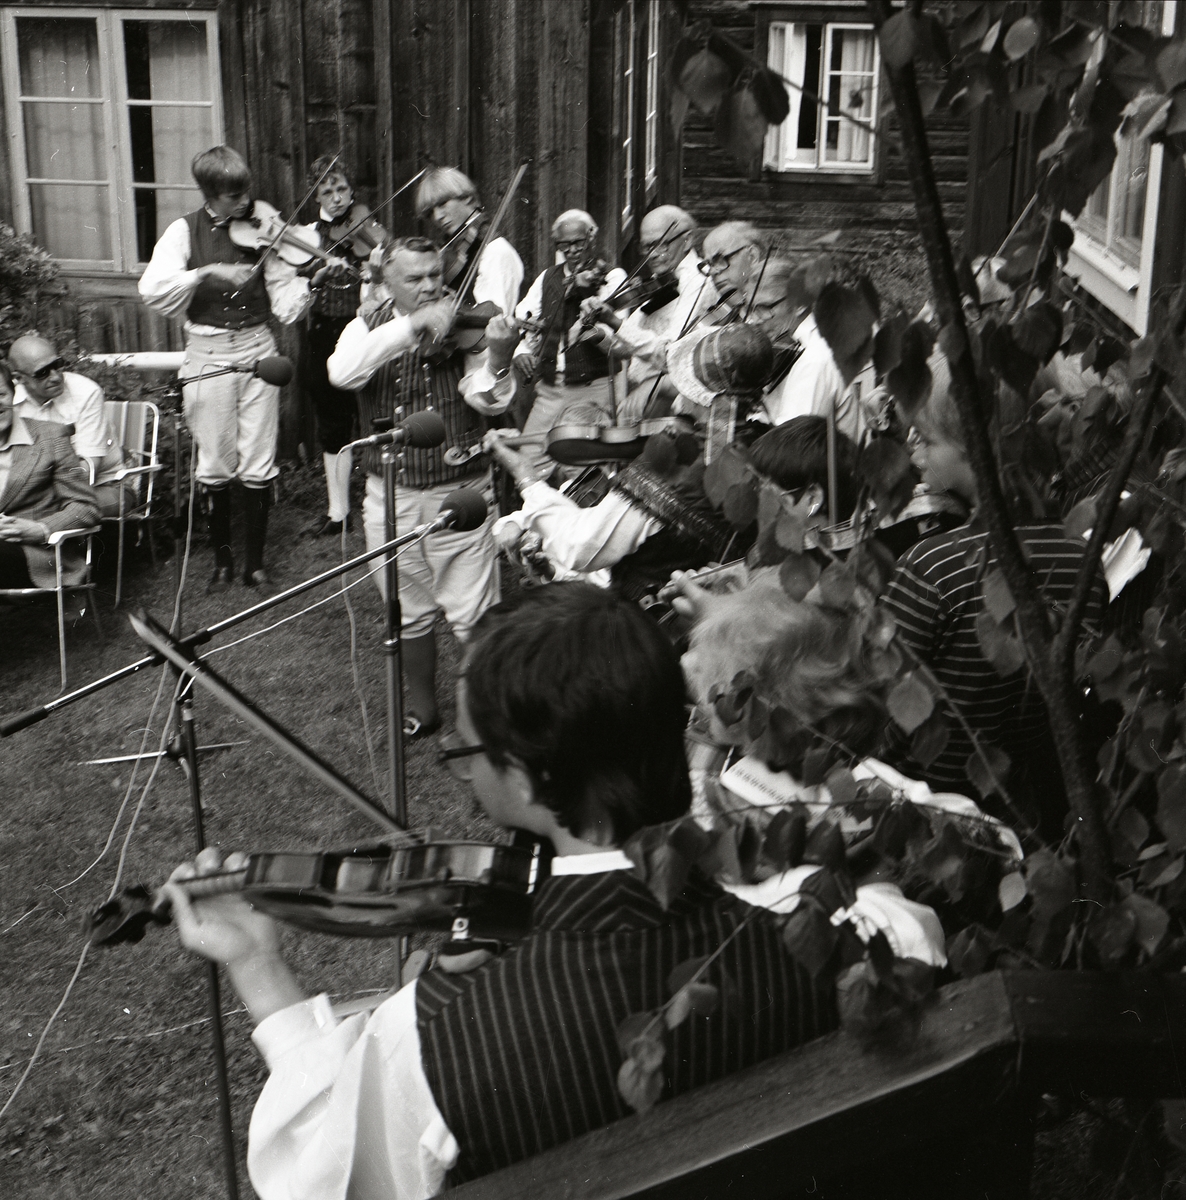 En grupp fiolspelare spelar vid Rengsjöfesten, 18 juli 1982. Fiolspelarna är iklädda folkdräkter.